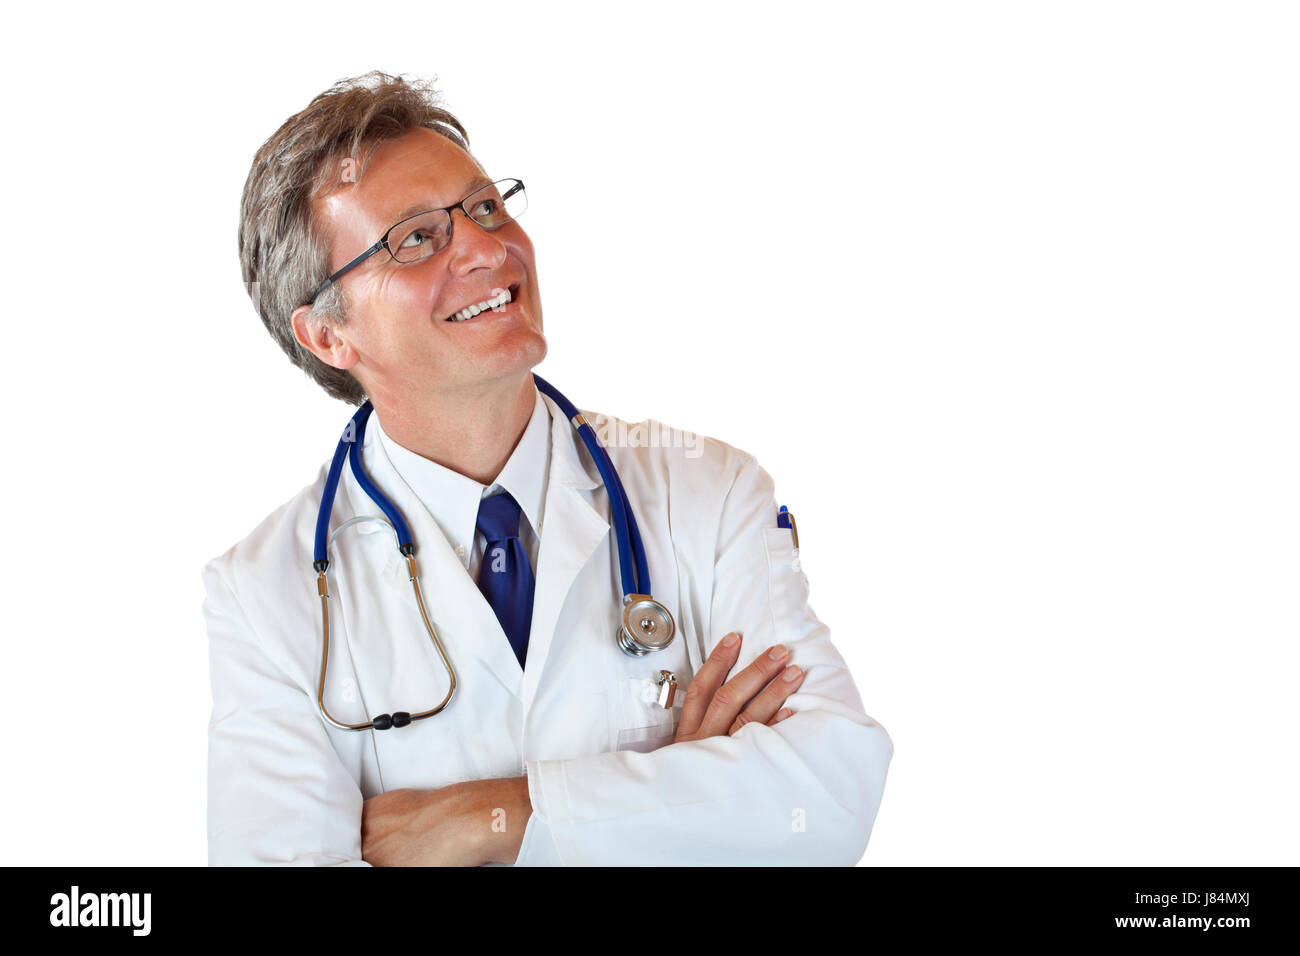 Medico medico medico medico look practicioner sguardo vedi vista guardando Foto Stock